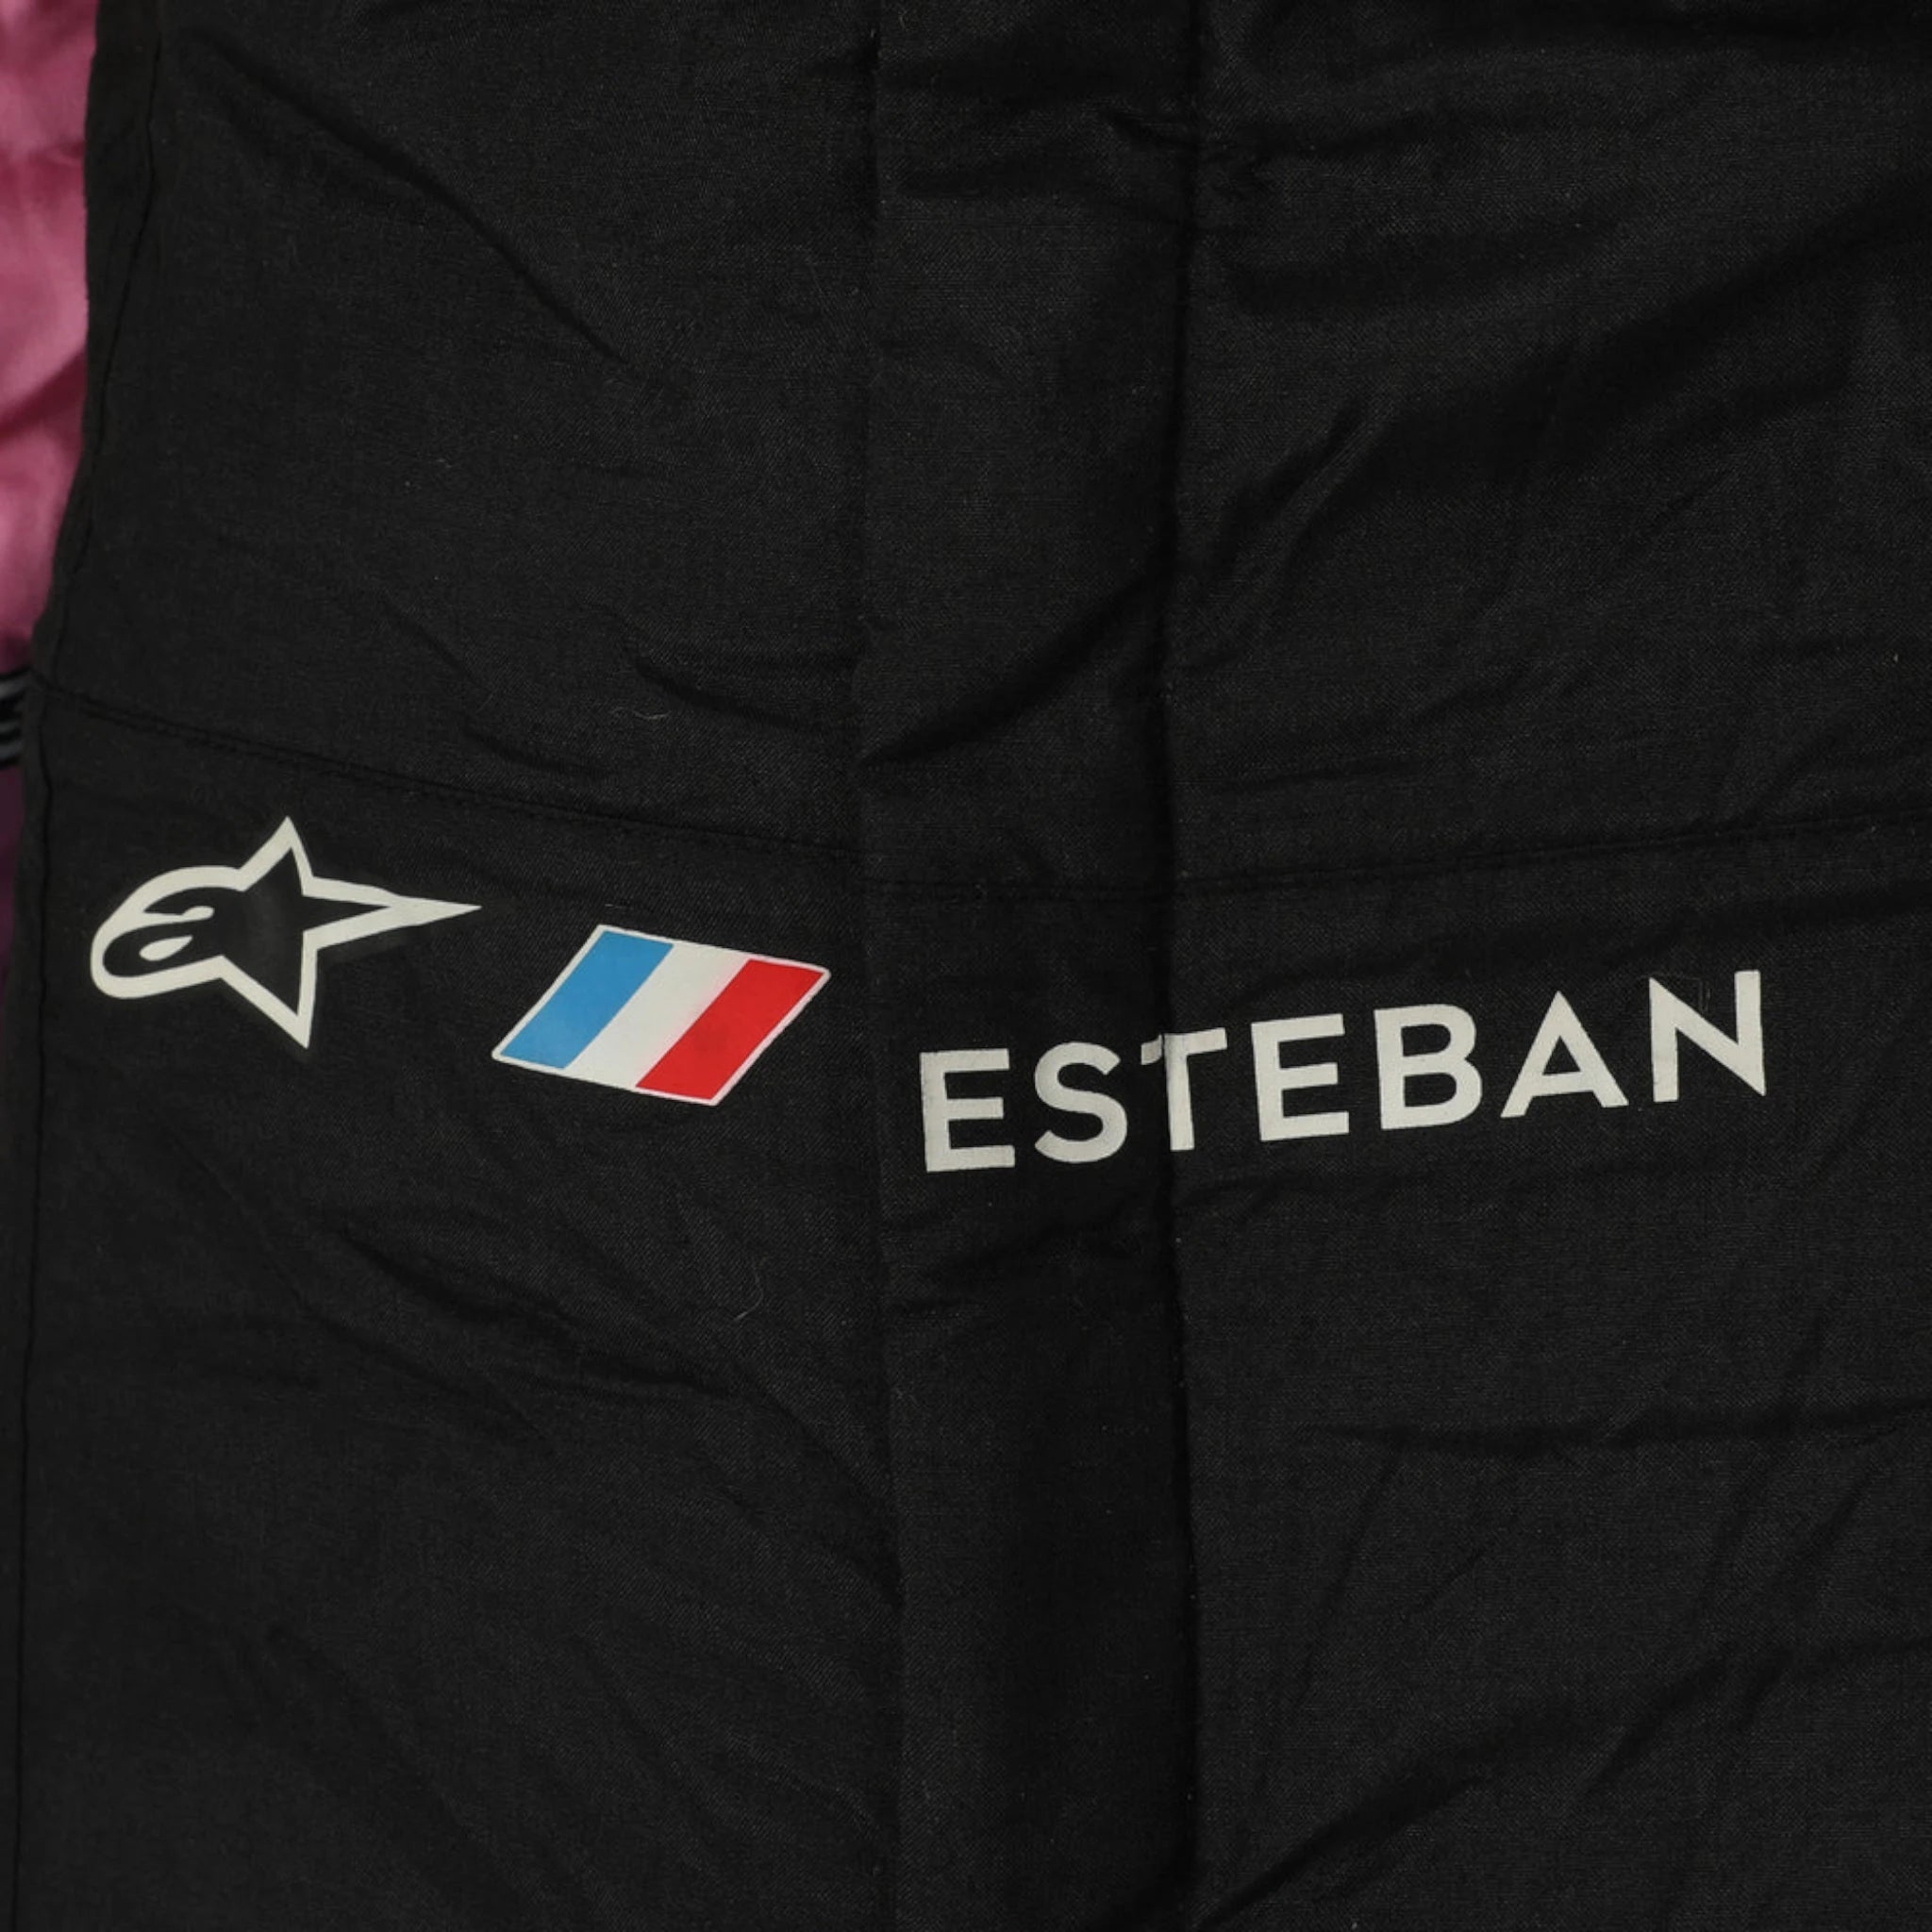 2023 Esteban Ocon BWT Alpine F1 Team Race Suit - Singapore GP